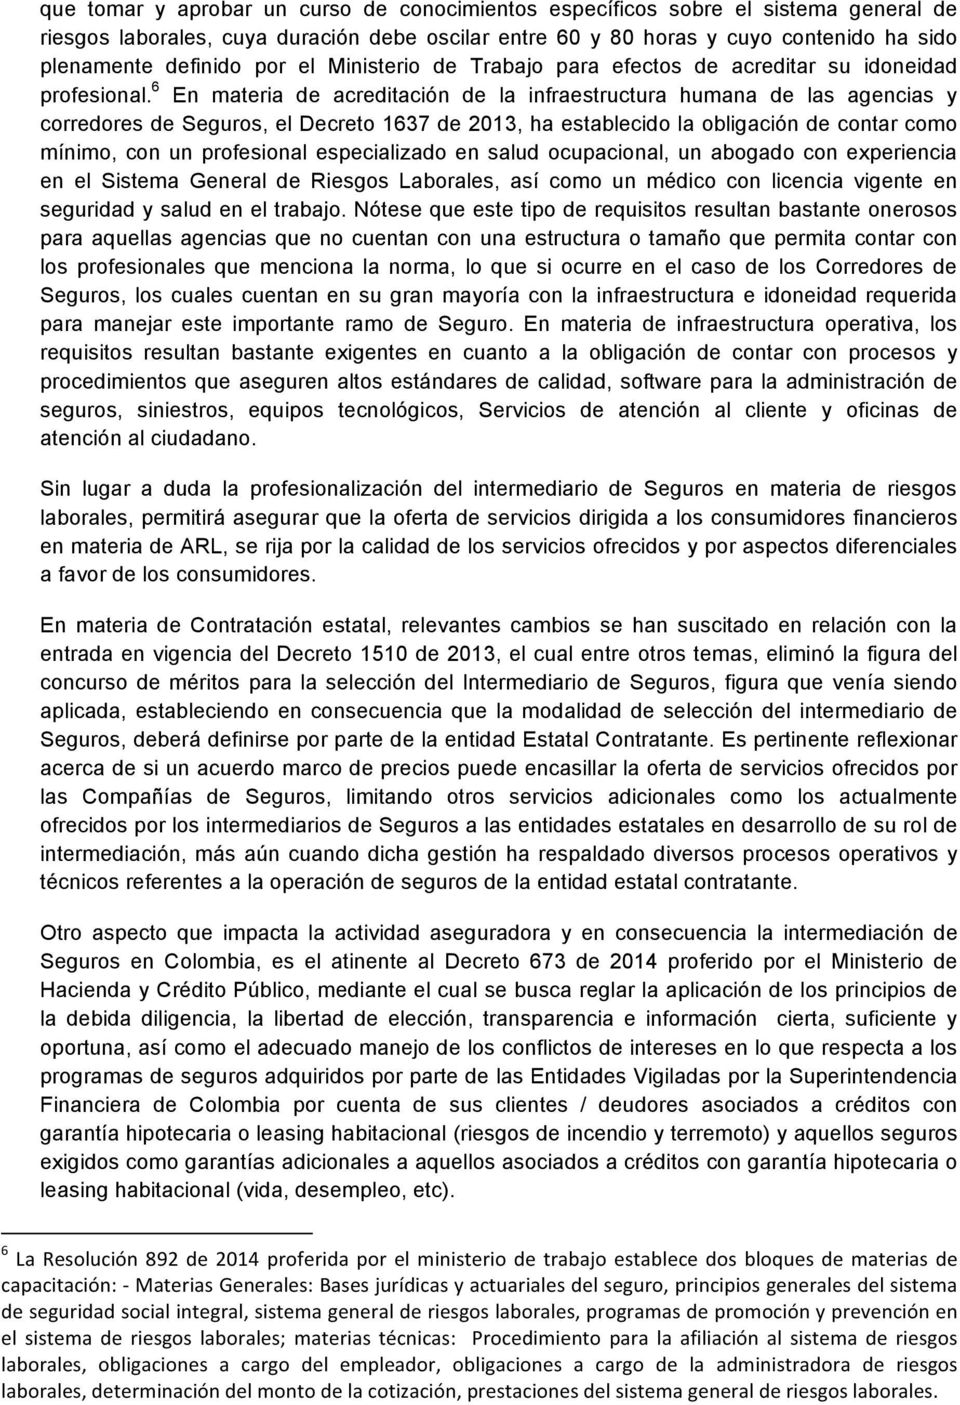 6 En materia de acreditación de la infraestructura humana de las agencias y corredores de Seguros, el Decreto 1637 de 2013, ha establecido la obligación de contar como mínimo, con un profesional